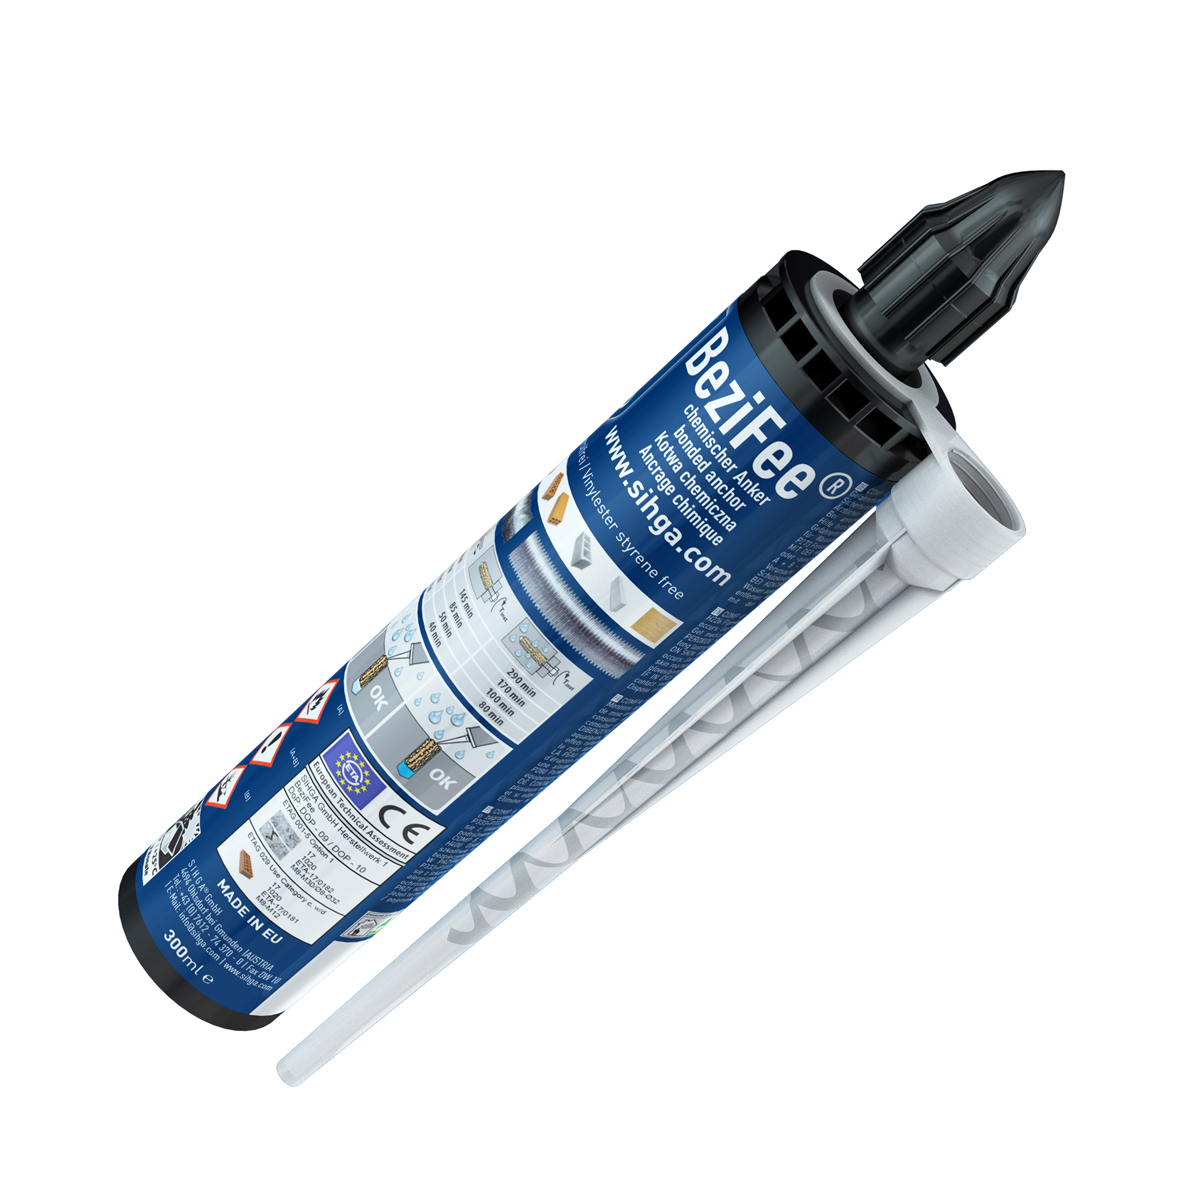 BEZIFEE® 2 Komponenten Injektionskleber-System 2 x 300 ml